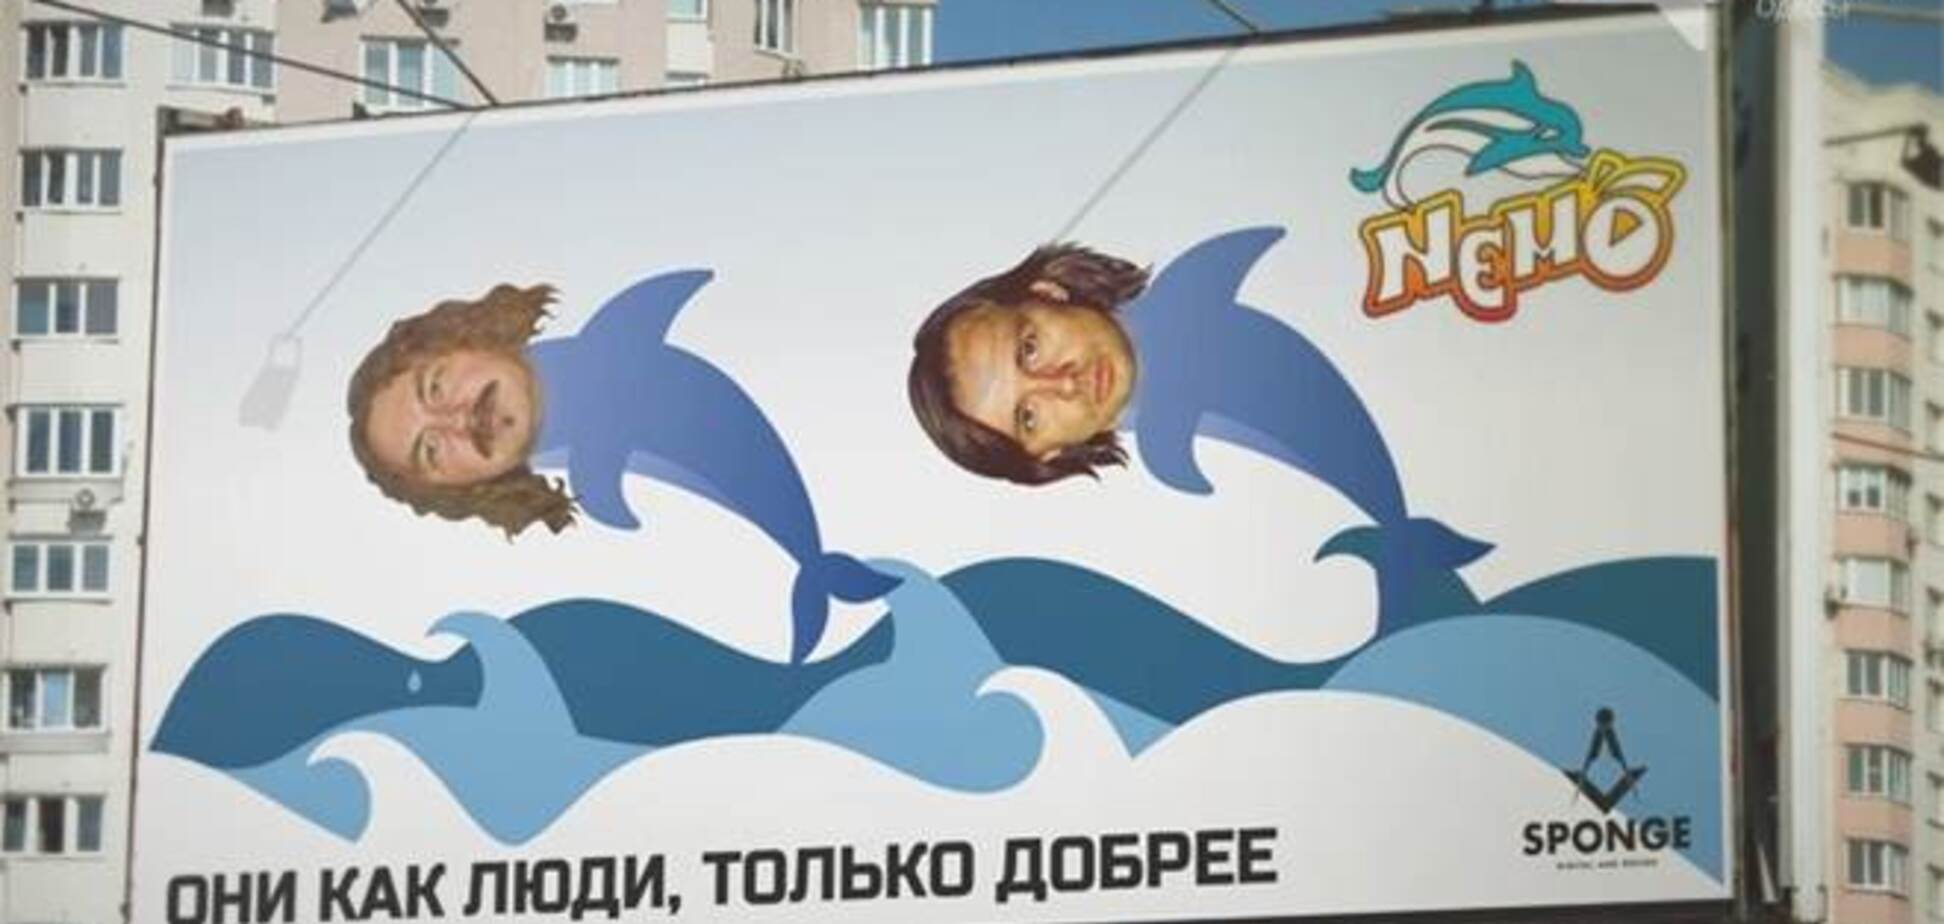 Одесские рекламщики превратили Игоря Николаева в дельфина